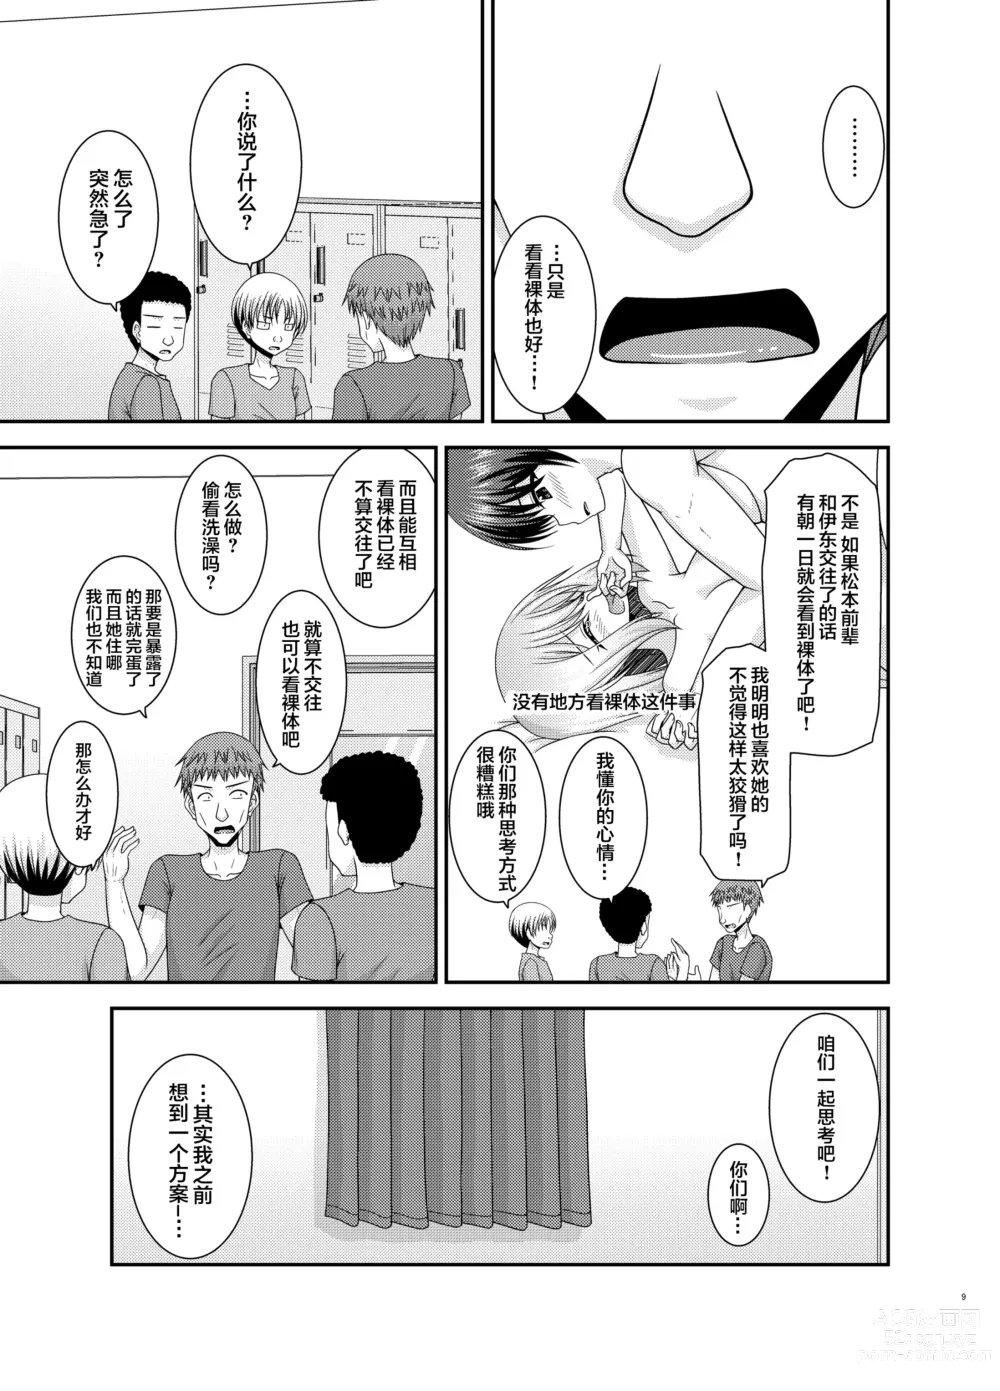 Page 6 of manga Nozokare Roshutsu Shoujo